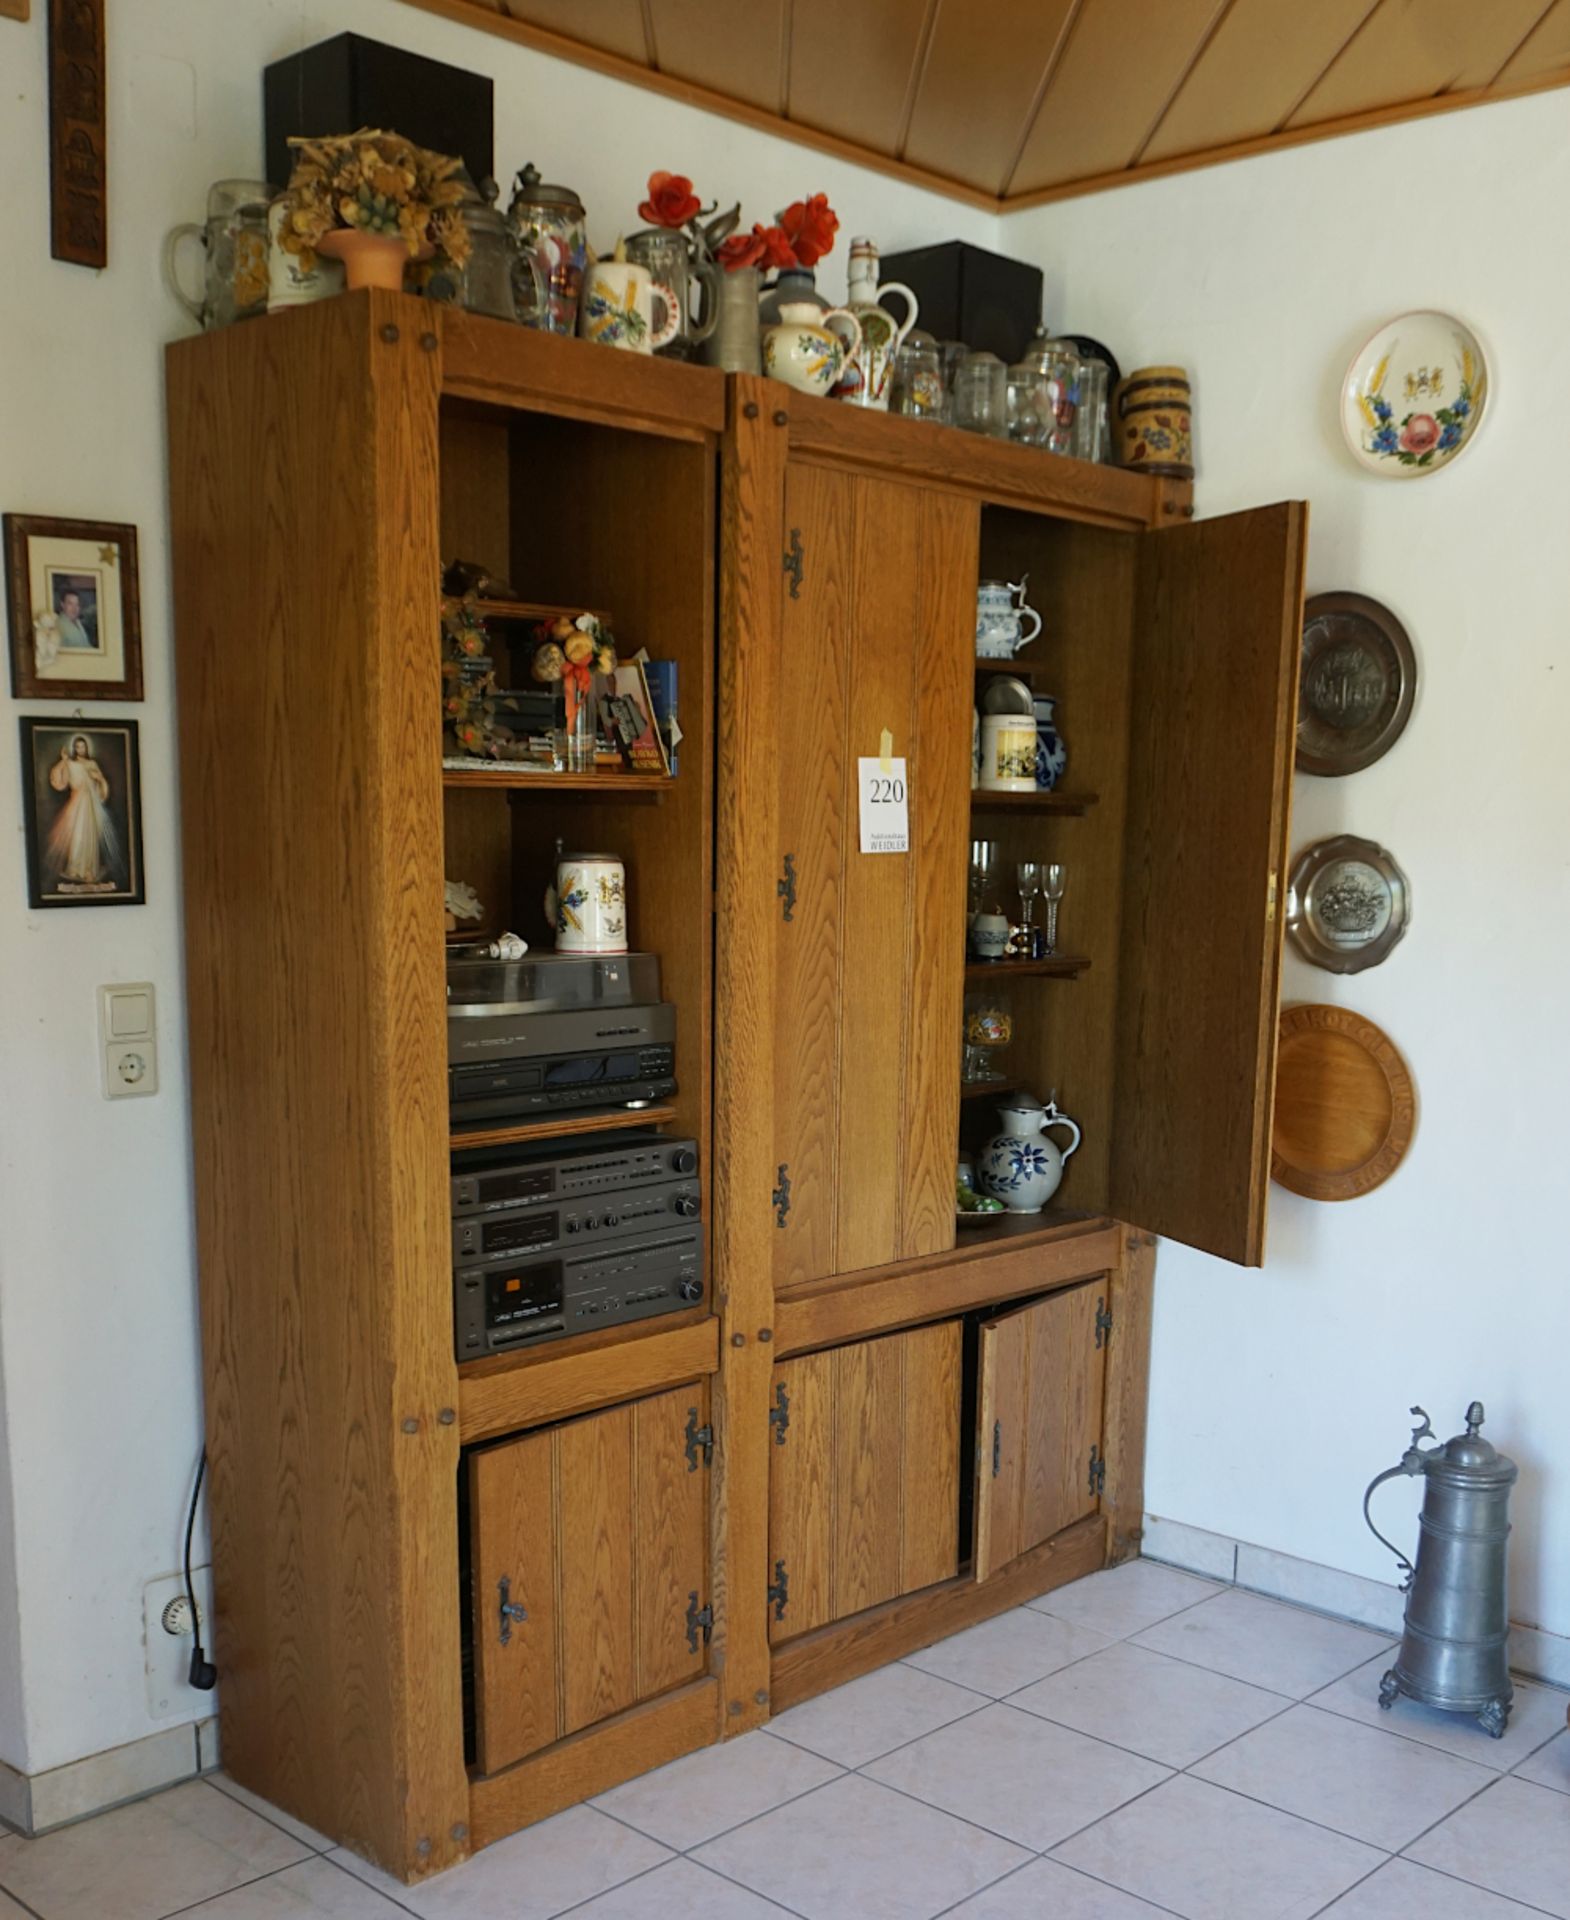 Einrichtung eines Wohnzimmer: Ledercouch, Tisch, Eichenschrankwand, ca. 194x168x45 cm,